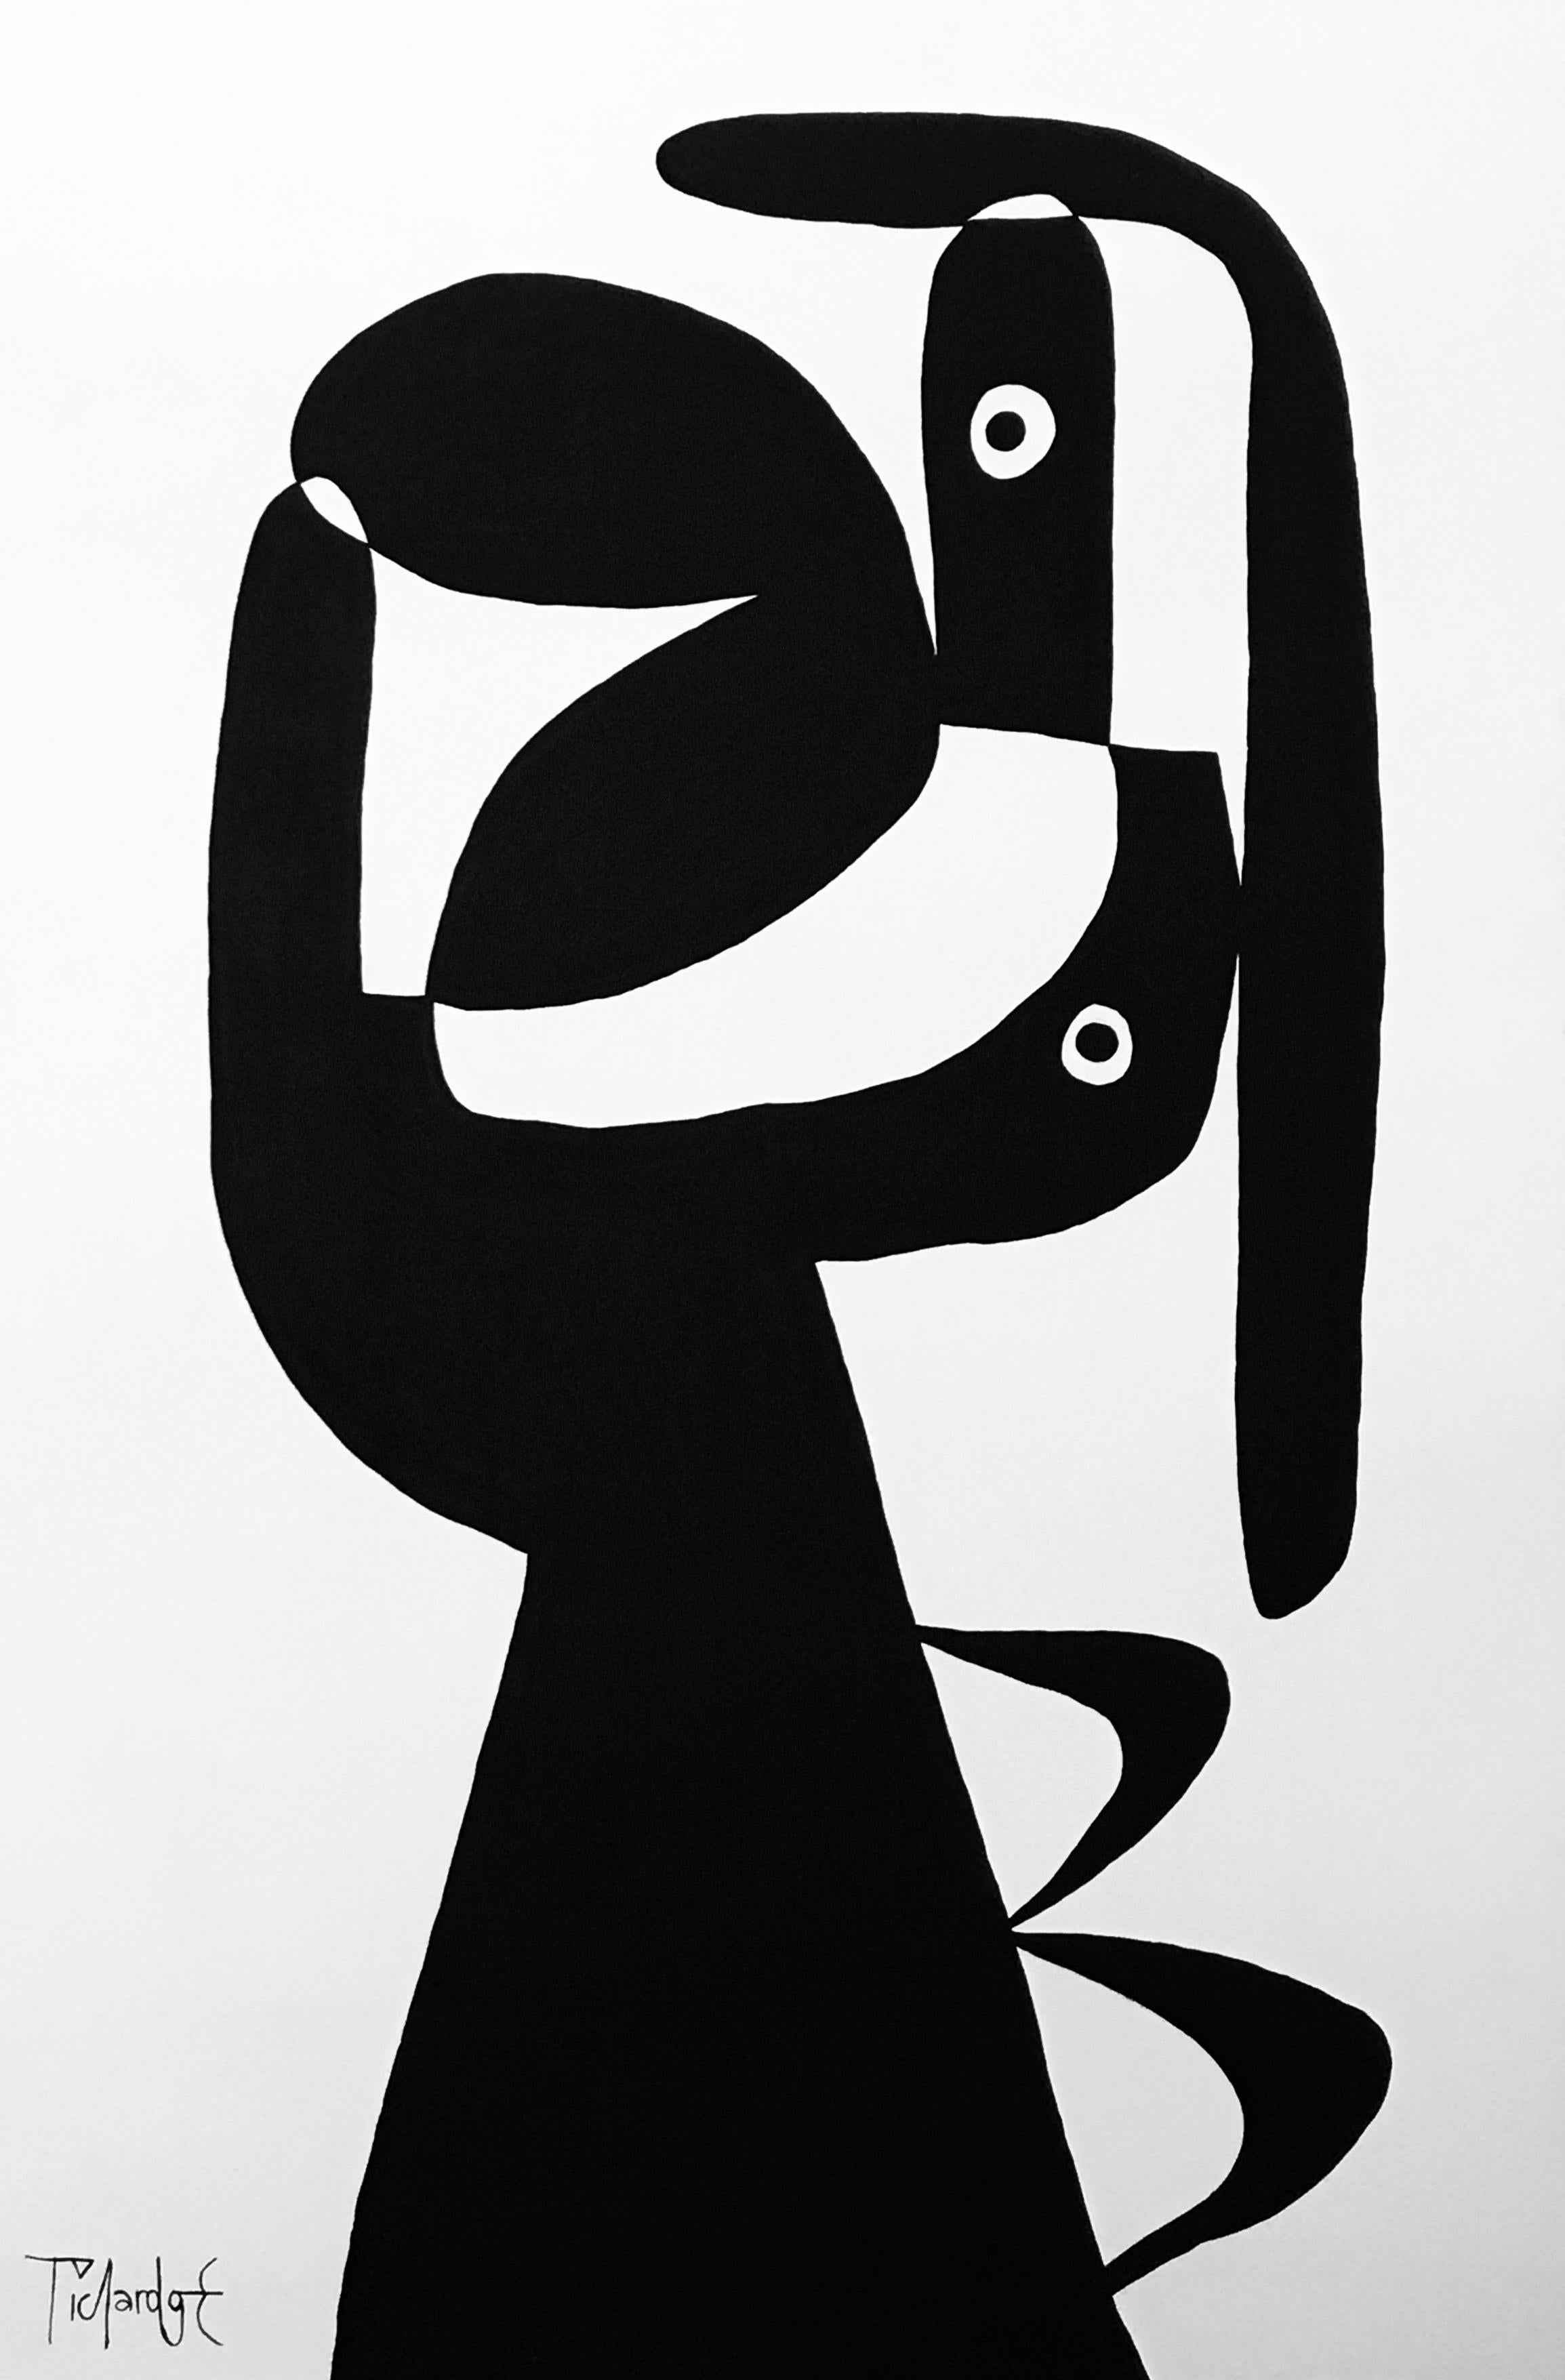 Cuerpo Escueto II, 2019
Contemporary Mexican Art, Abstract Painting
Acrylic on canvas
Signed and dated 


About the artist
Enrique Pichardo (Mexico City, 1973) graduated from Escuela Nacional de Pintura, Escultura y Grabado (ENPEG) “La Esmeralda”.